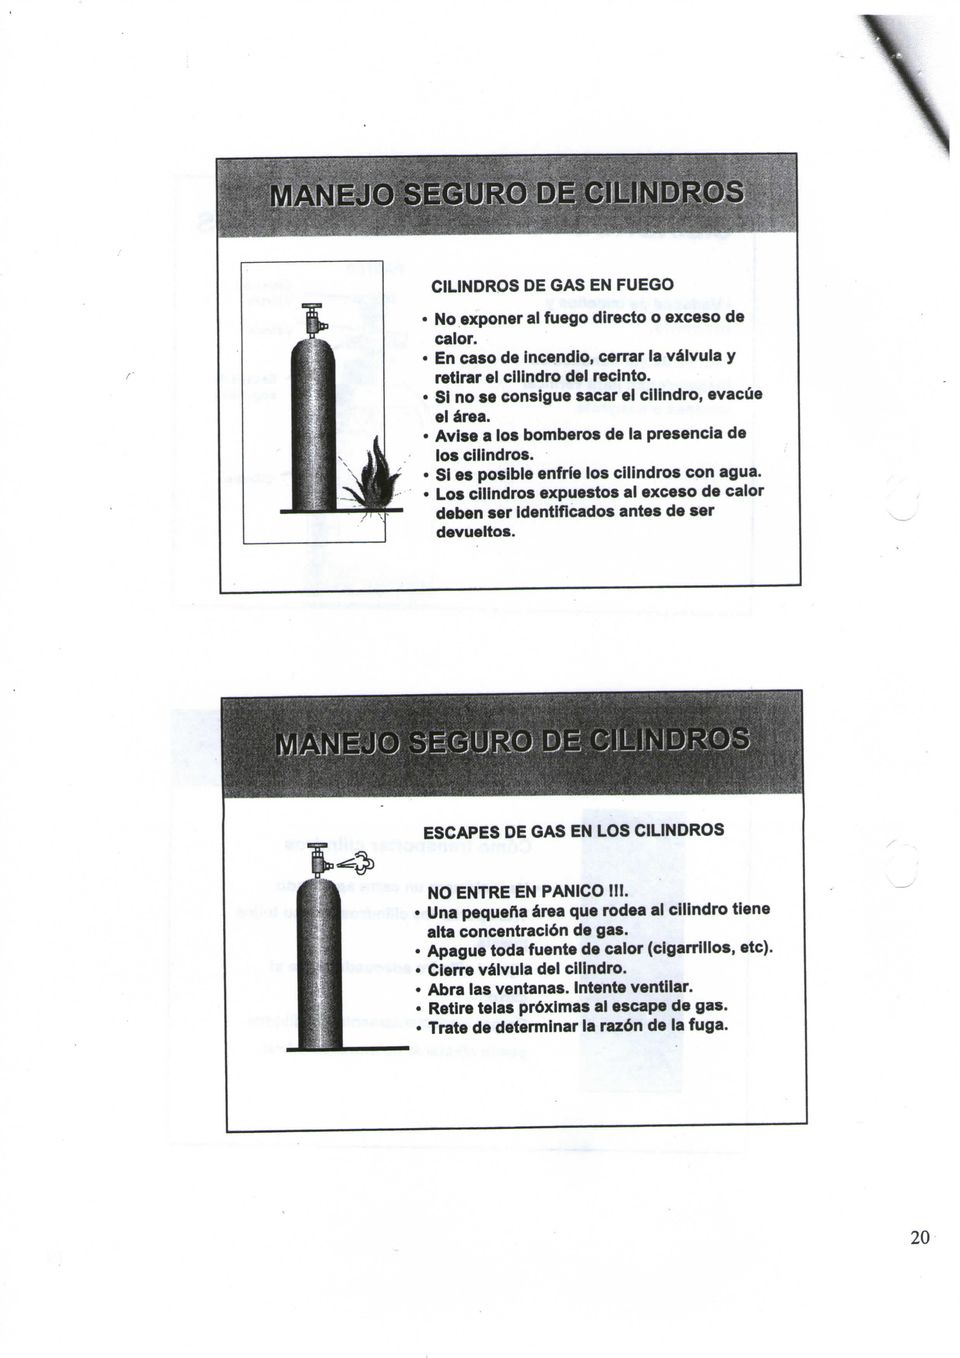 Los cilindros expuestos al exceso de calor deben ser identificados antes de ser devueltos. ESCAPES DE GAS EN LOS CILINDROS NO ENTRE EN PANICO III.